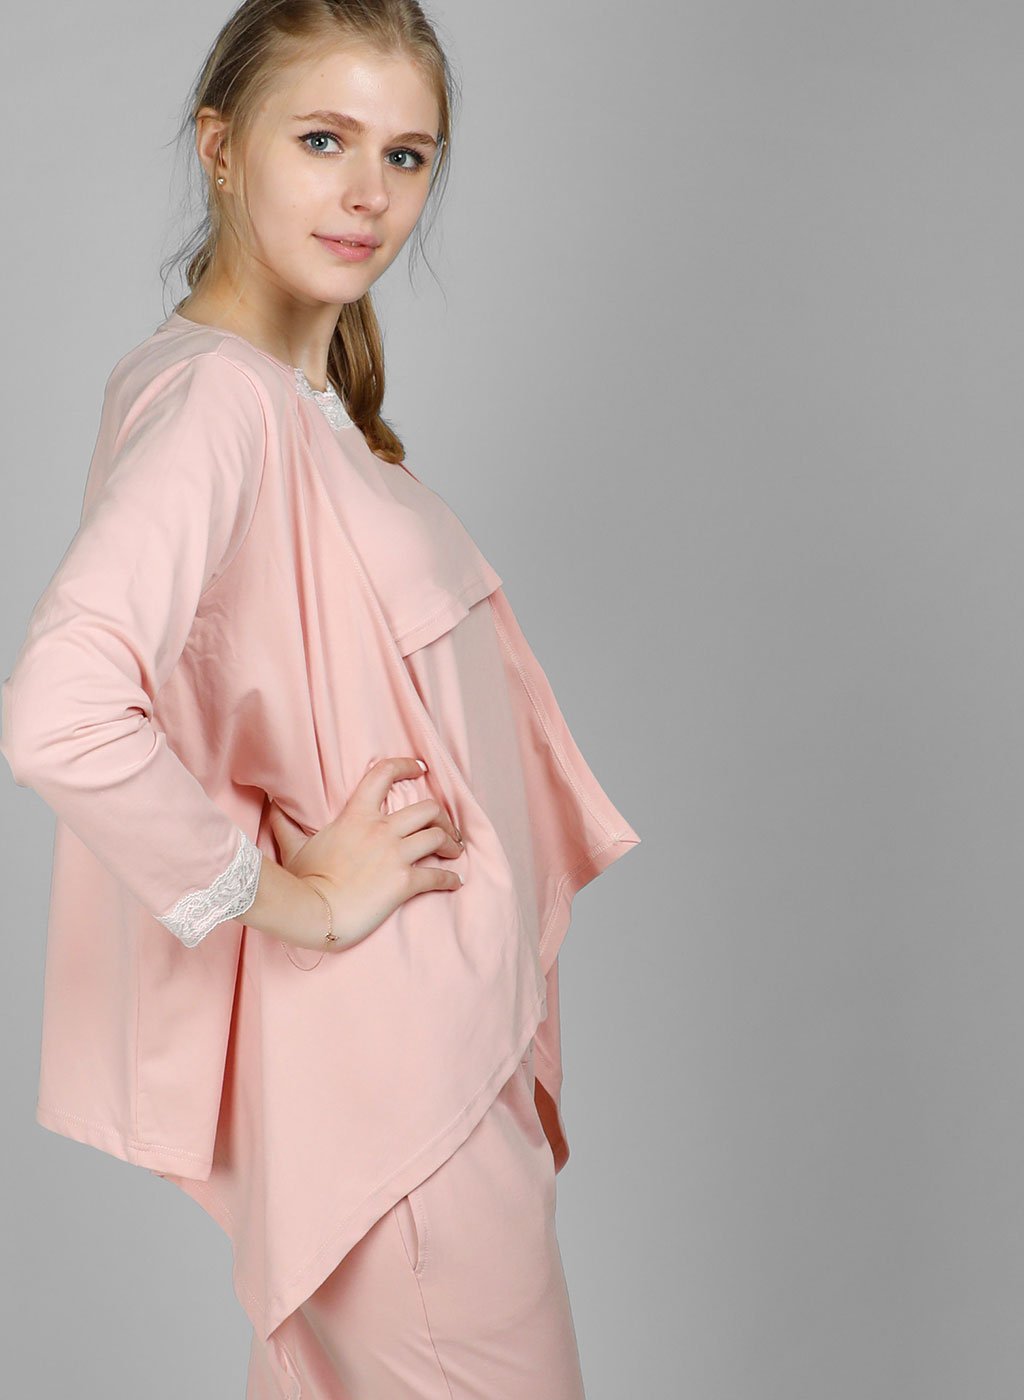 Lovemère Sleepwear Blush Pink Maternity & Nursing Pajamas